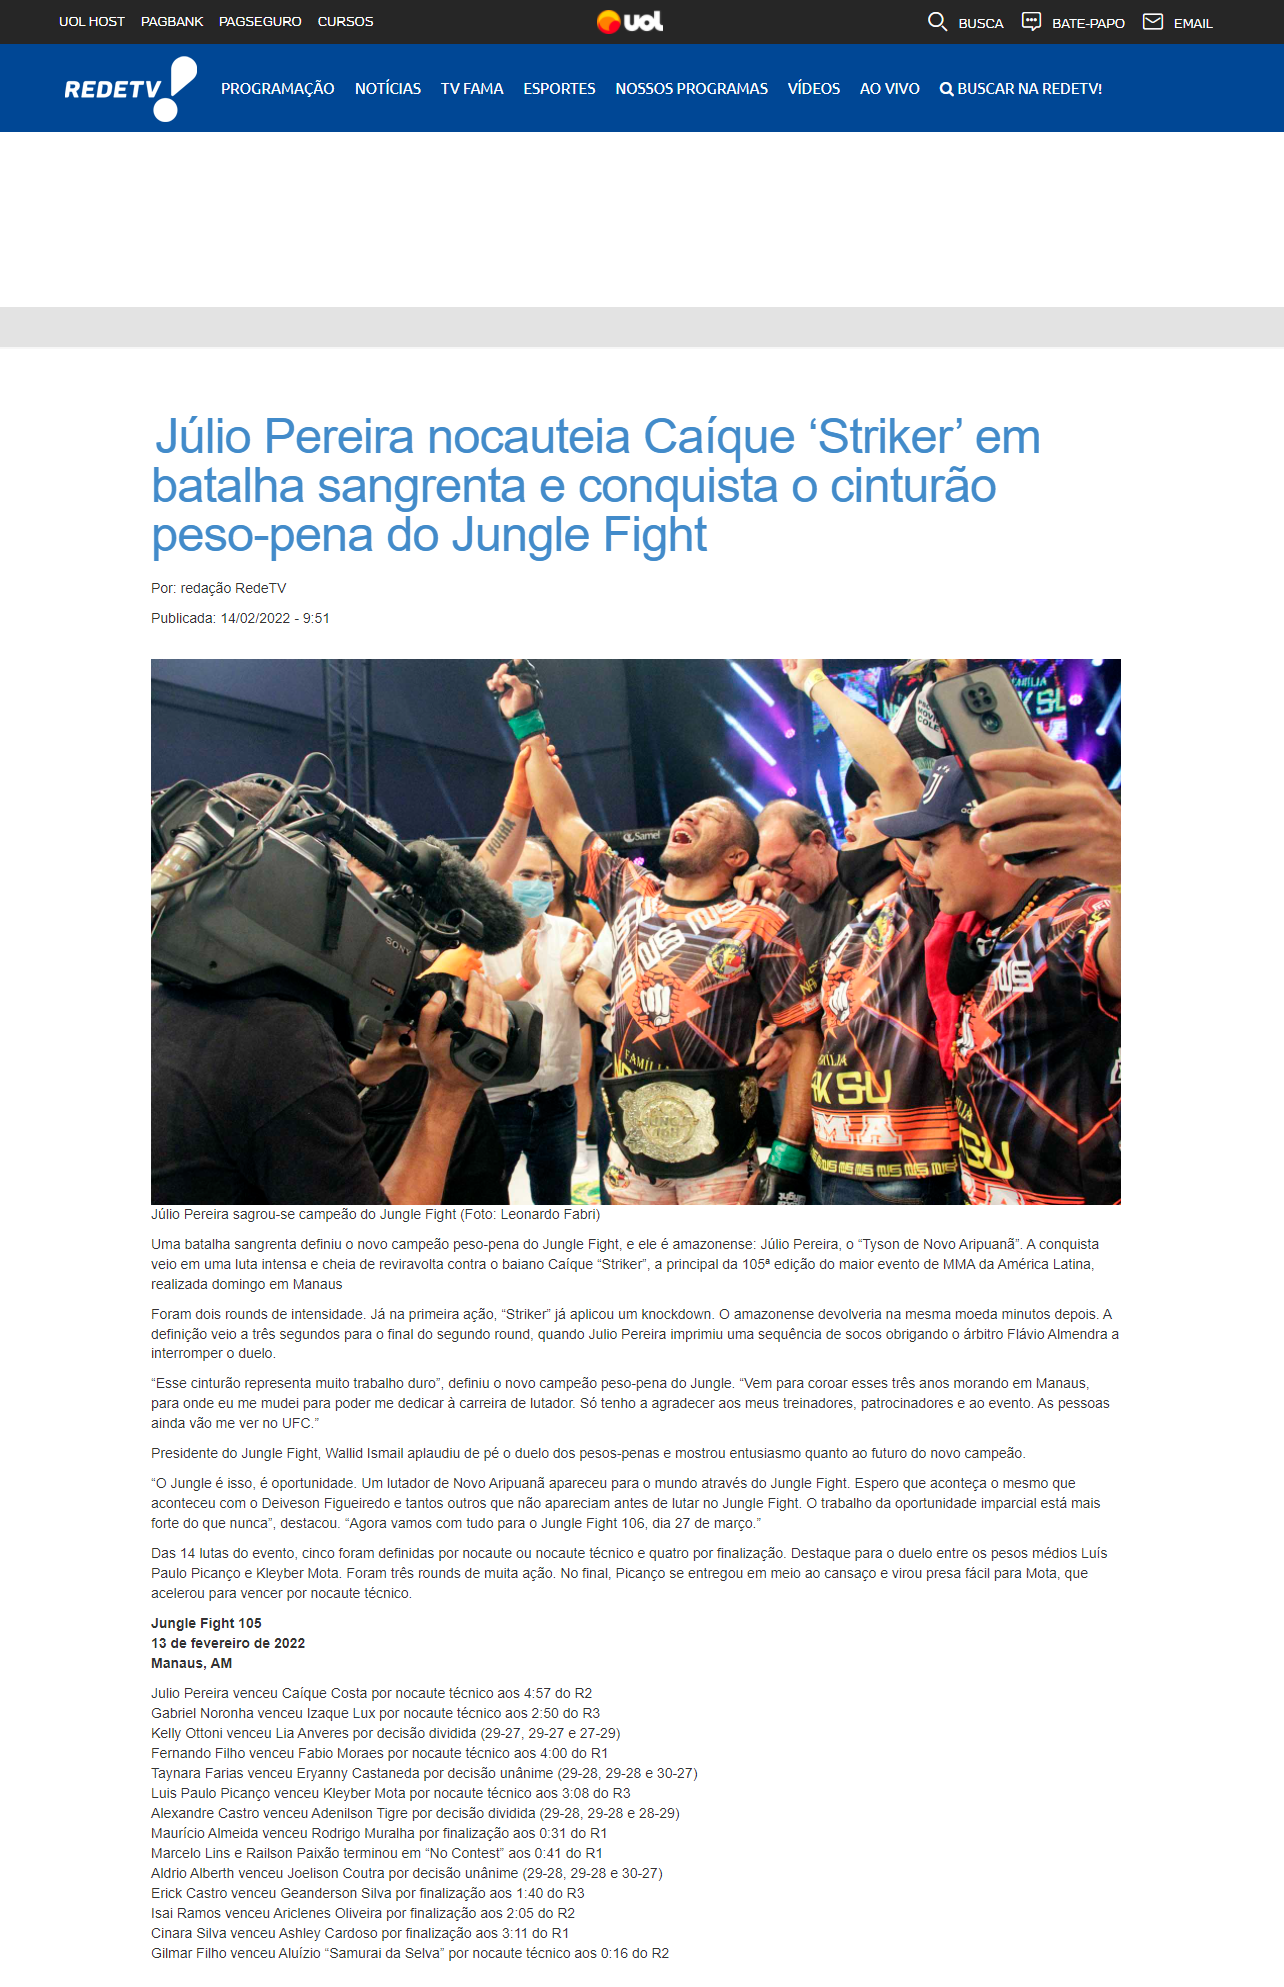 UOL – Júlio Pereira nocauteia Caíque 'Striker' em batalha